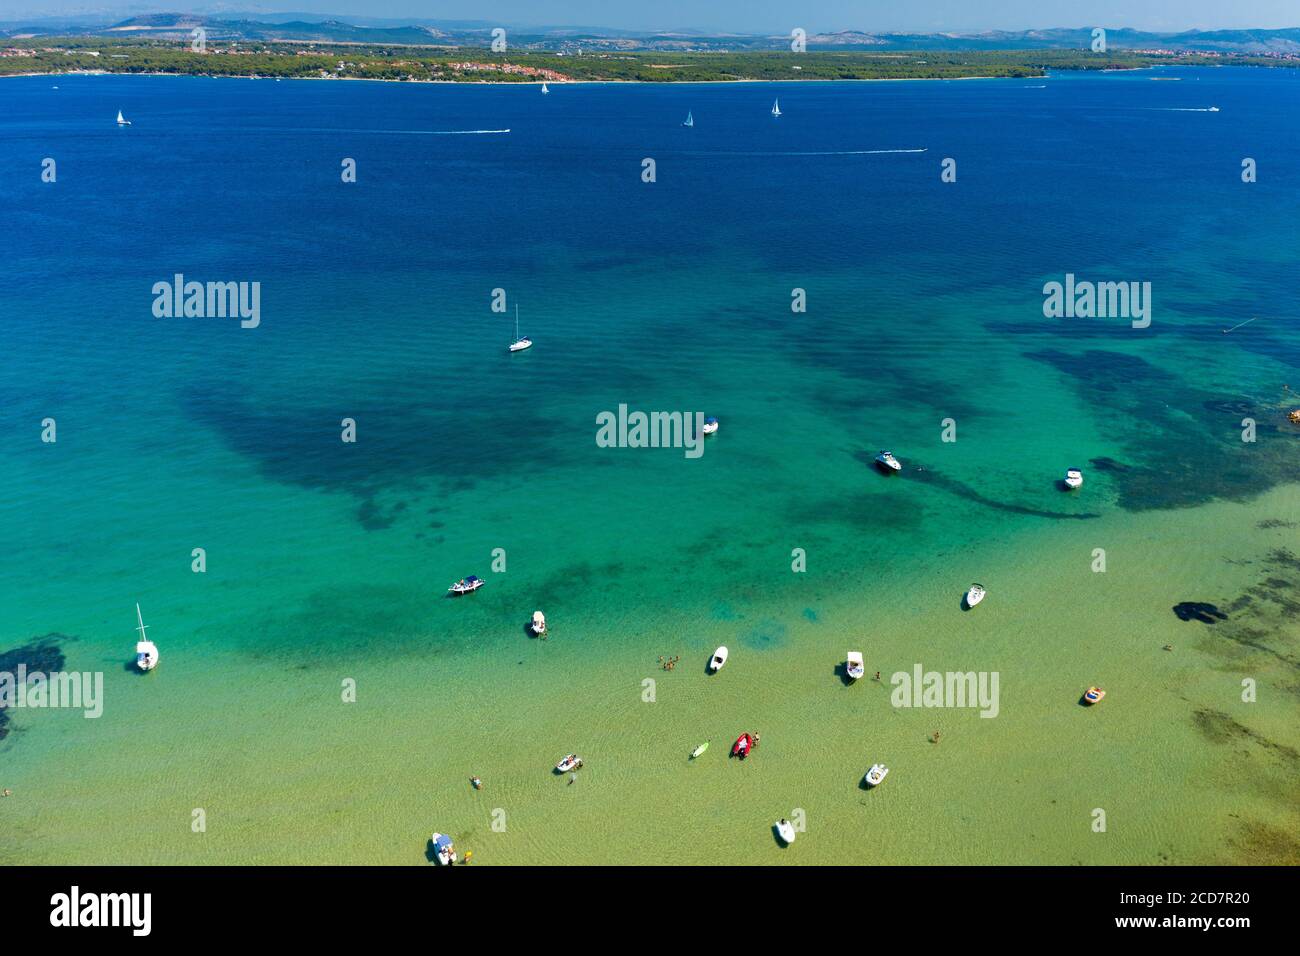 Vue aérienne d'une plage et de la mer sur l'île de Pasman, Croatie Banque D'Images